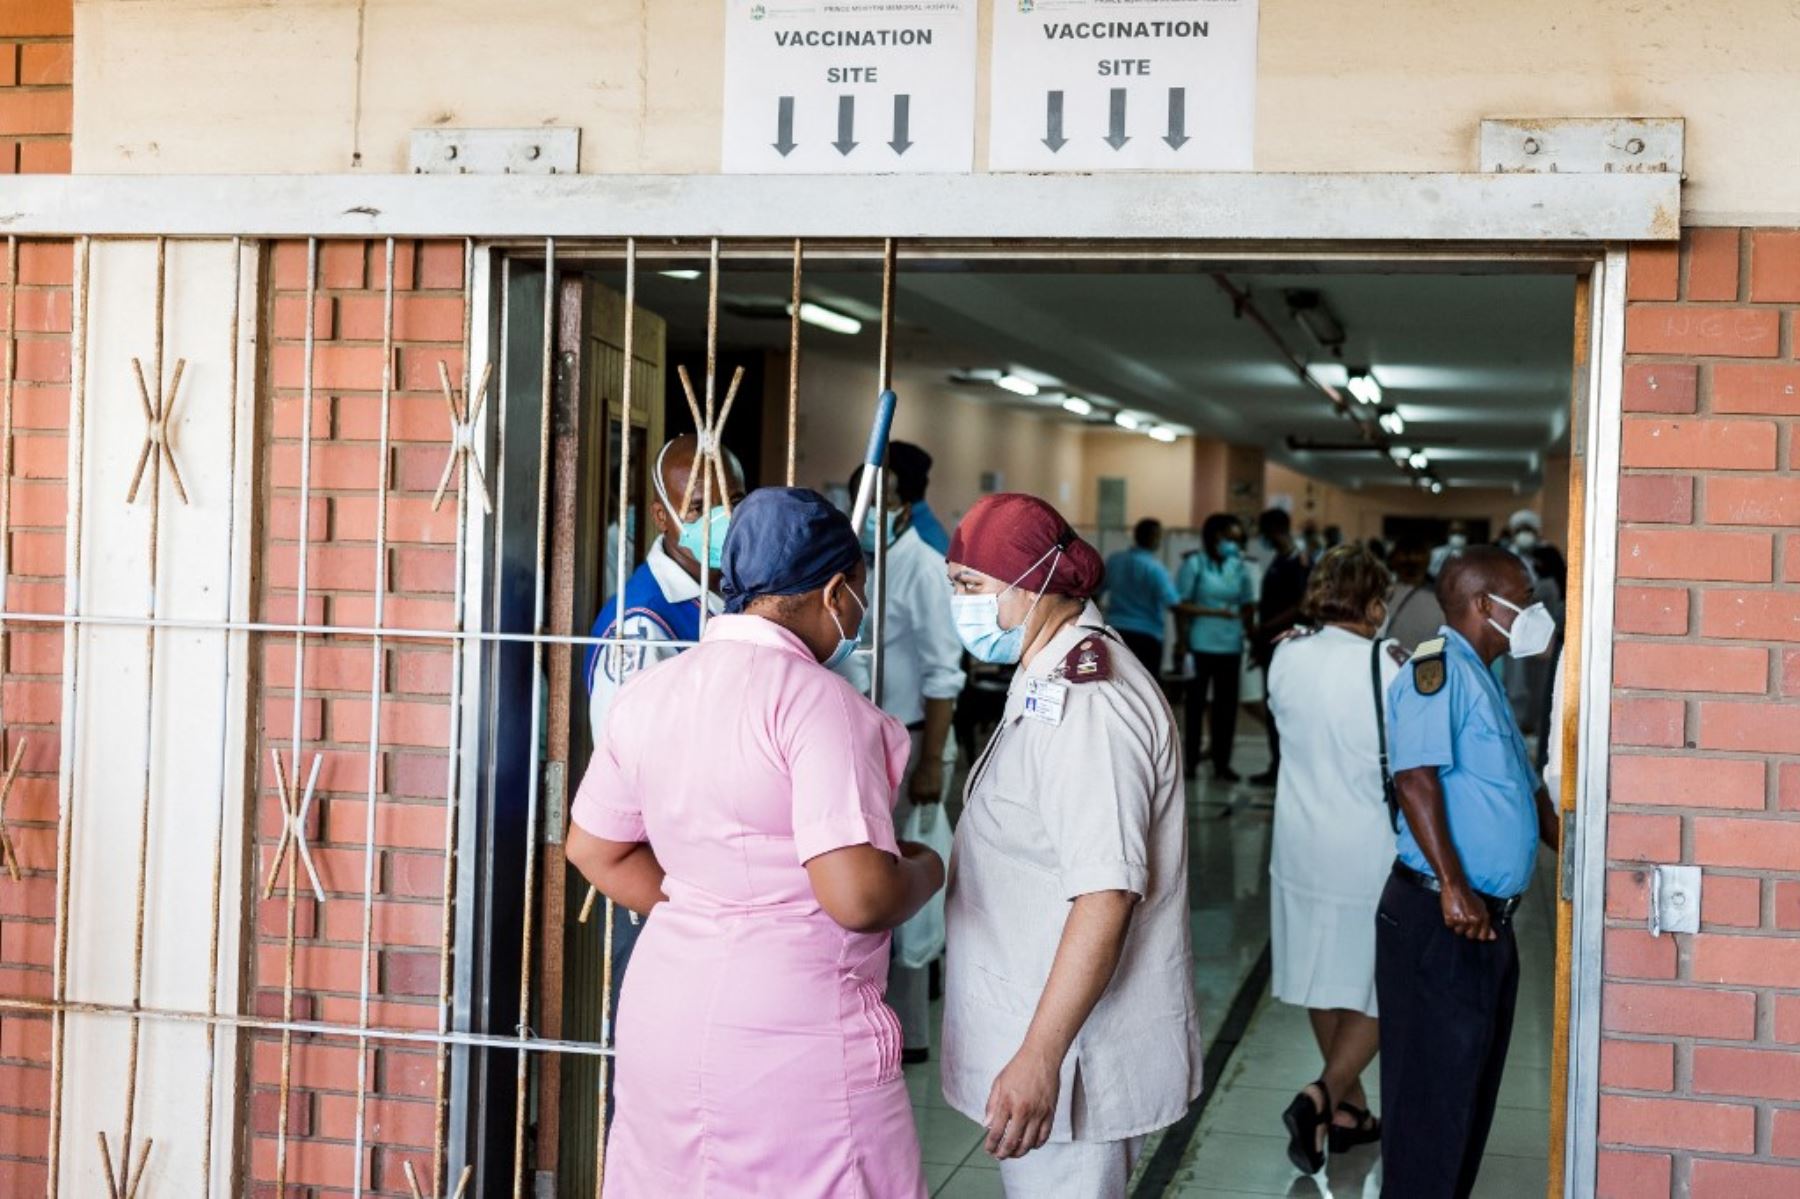 Los trabajadores de la salud se reúnen en un sitio de vacunación para recibir una dosis de la vacuna Johnson & Johnson contra el coronavirus covid-19 mientras Sudáfrica avanza con su campaña de inoculación en el Hospital Prince Mshiyeni en Umlazi, al sur de Durban, el 18 de febrero de 2021. Foto: AFP